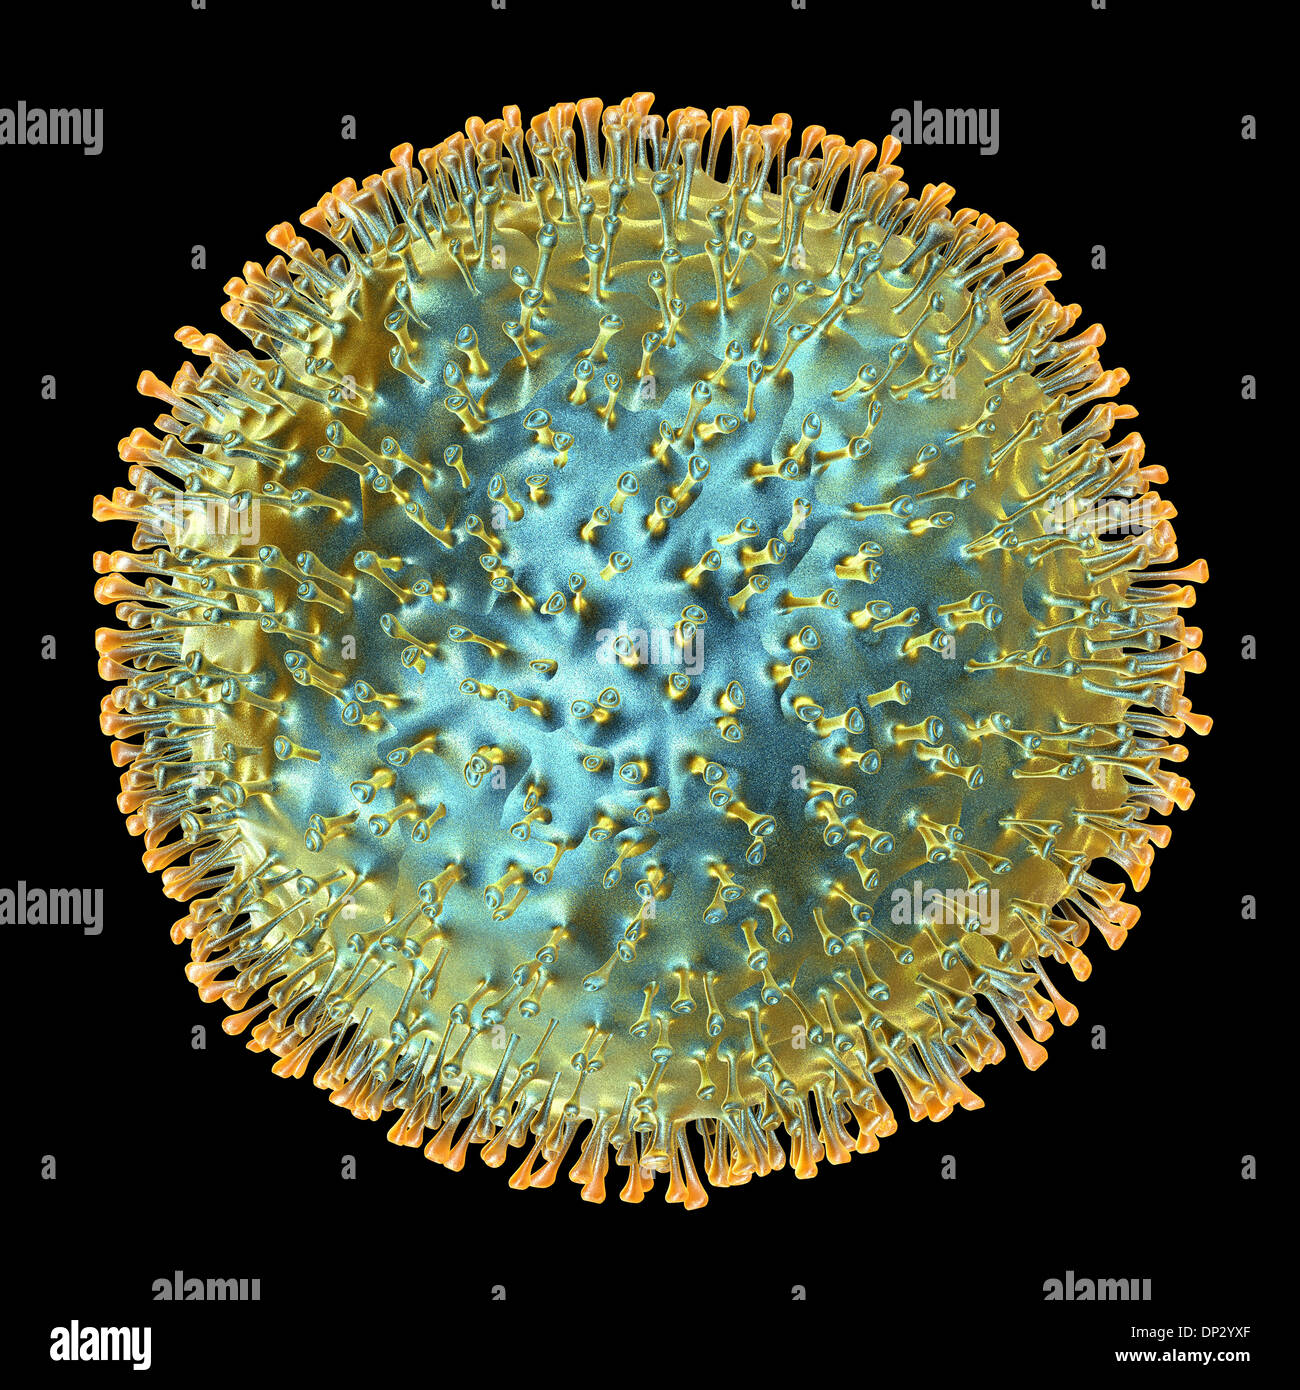 Avian influenza virus, artwork Stock Photo